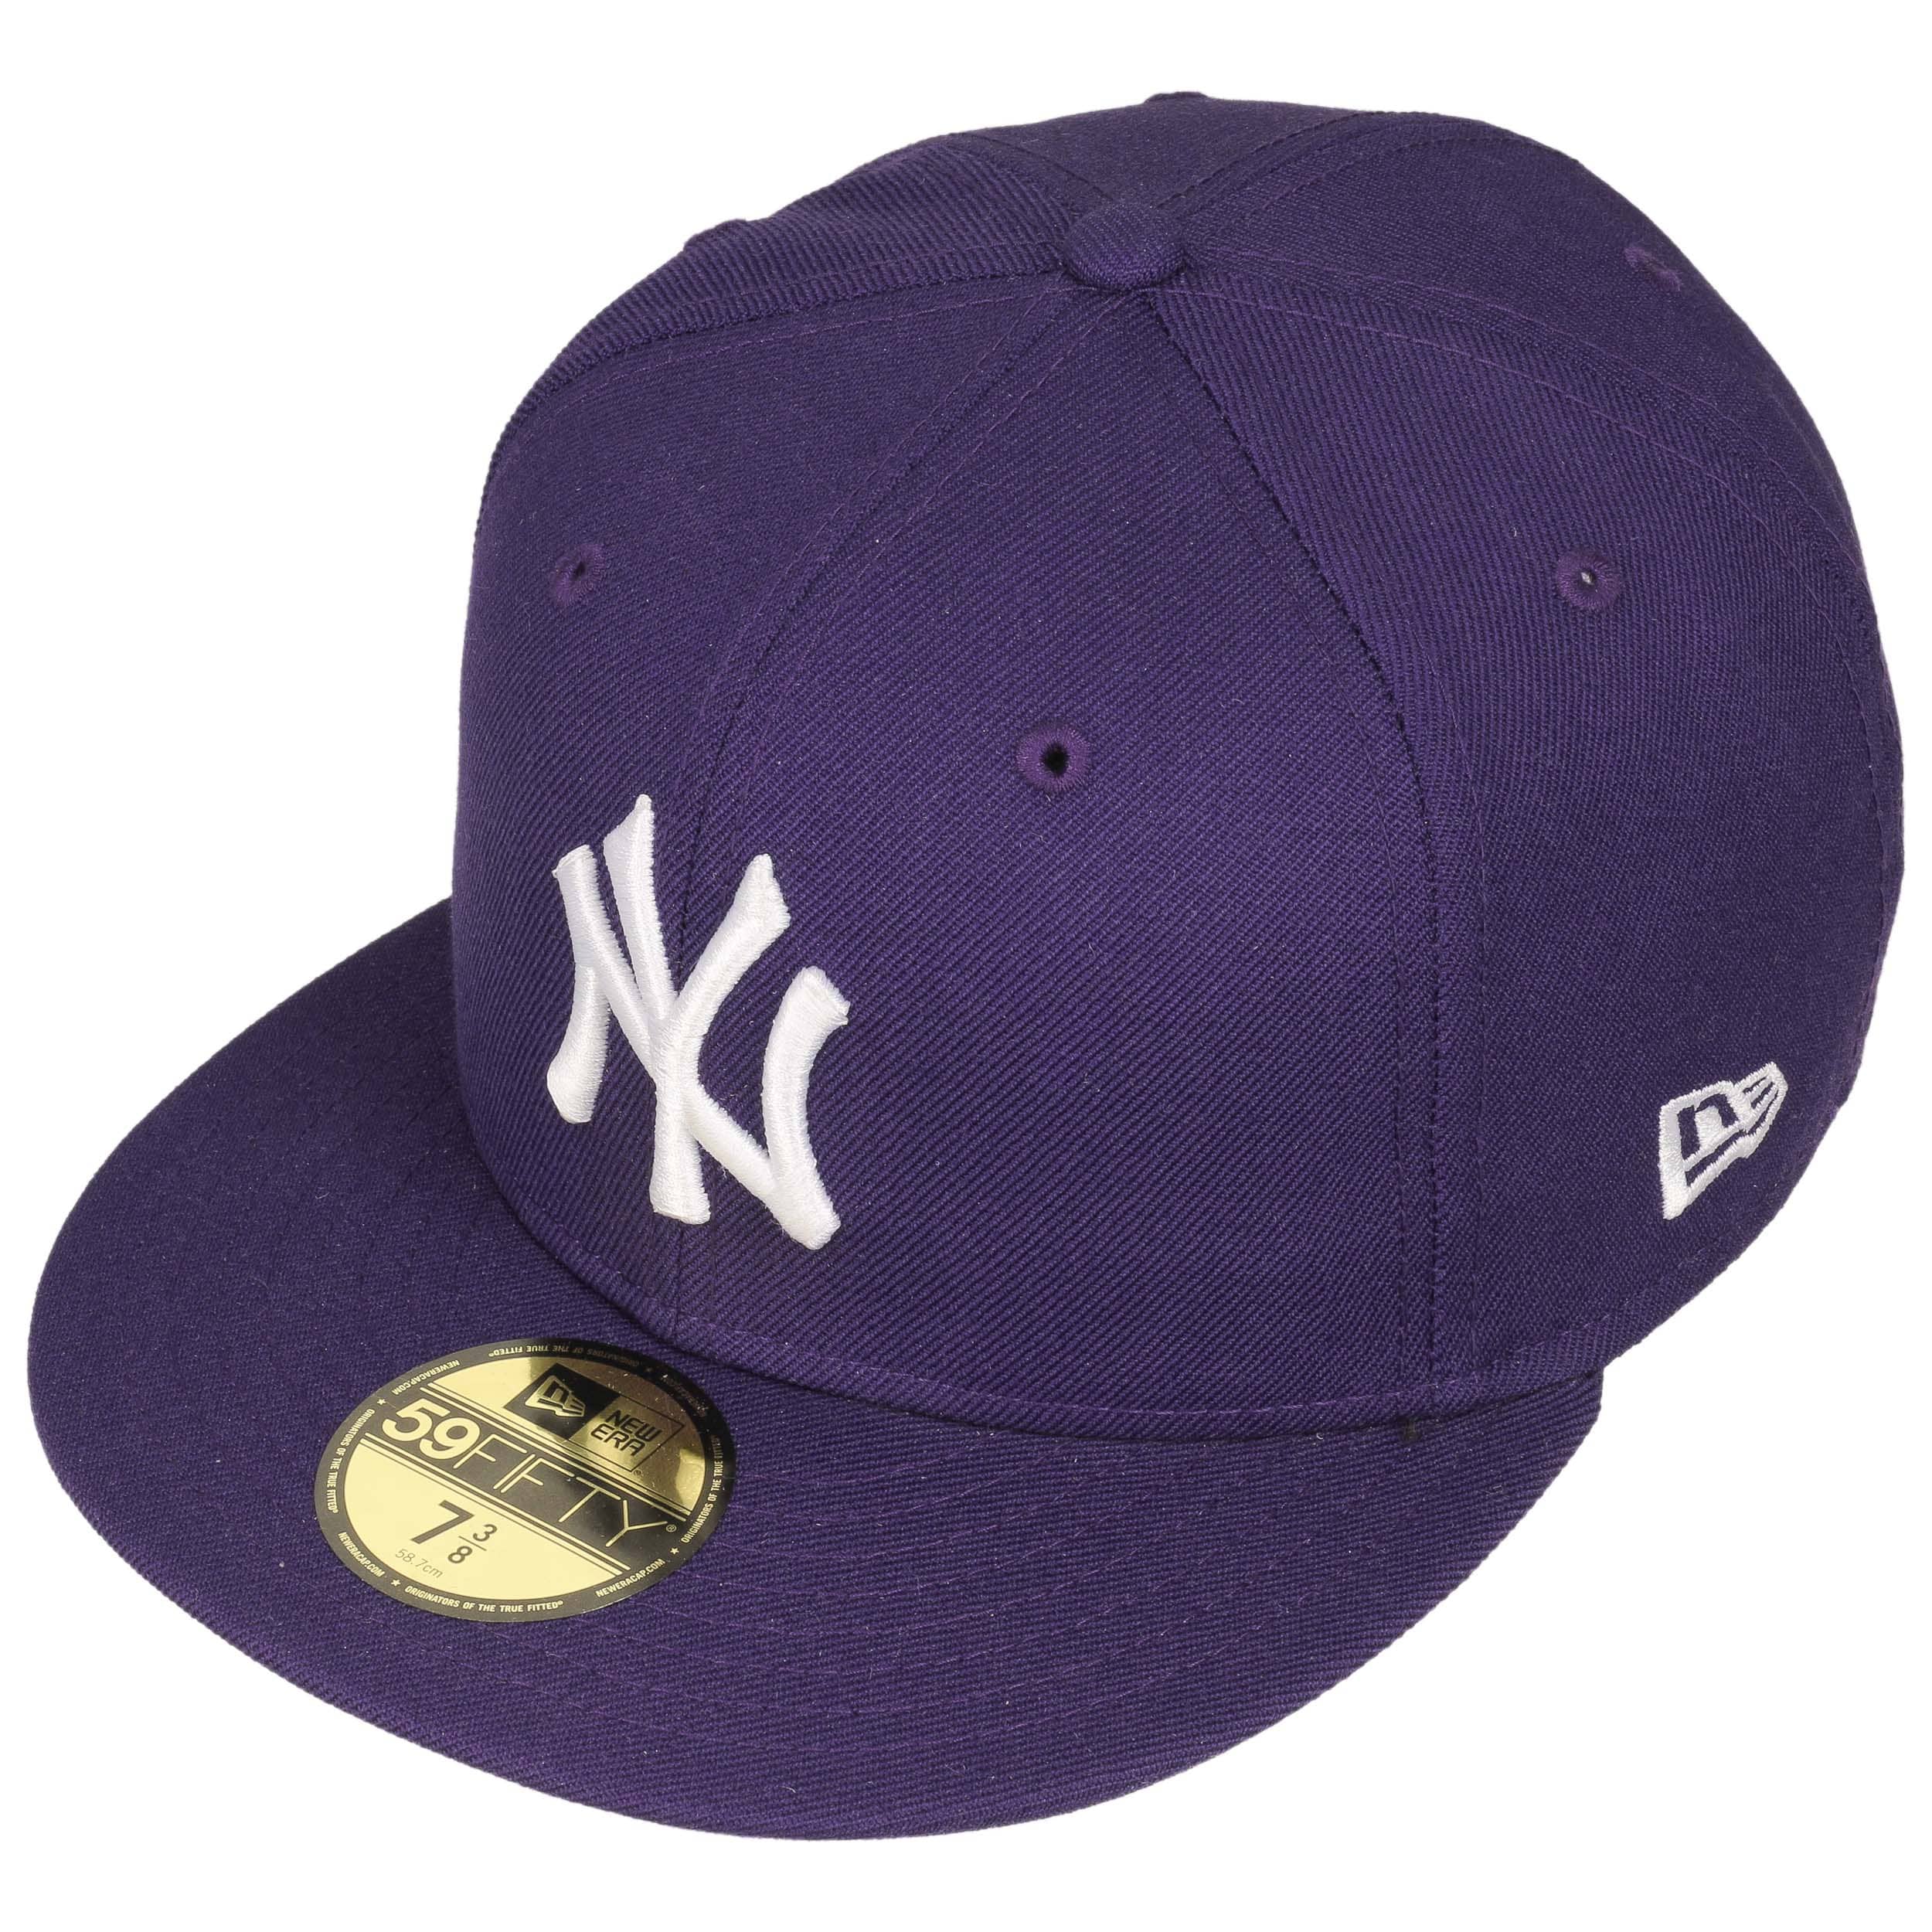 59Fifty MLB Basic NY Cap by New Era, EUR 39,95 --> Hats, caps & beanies